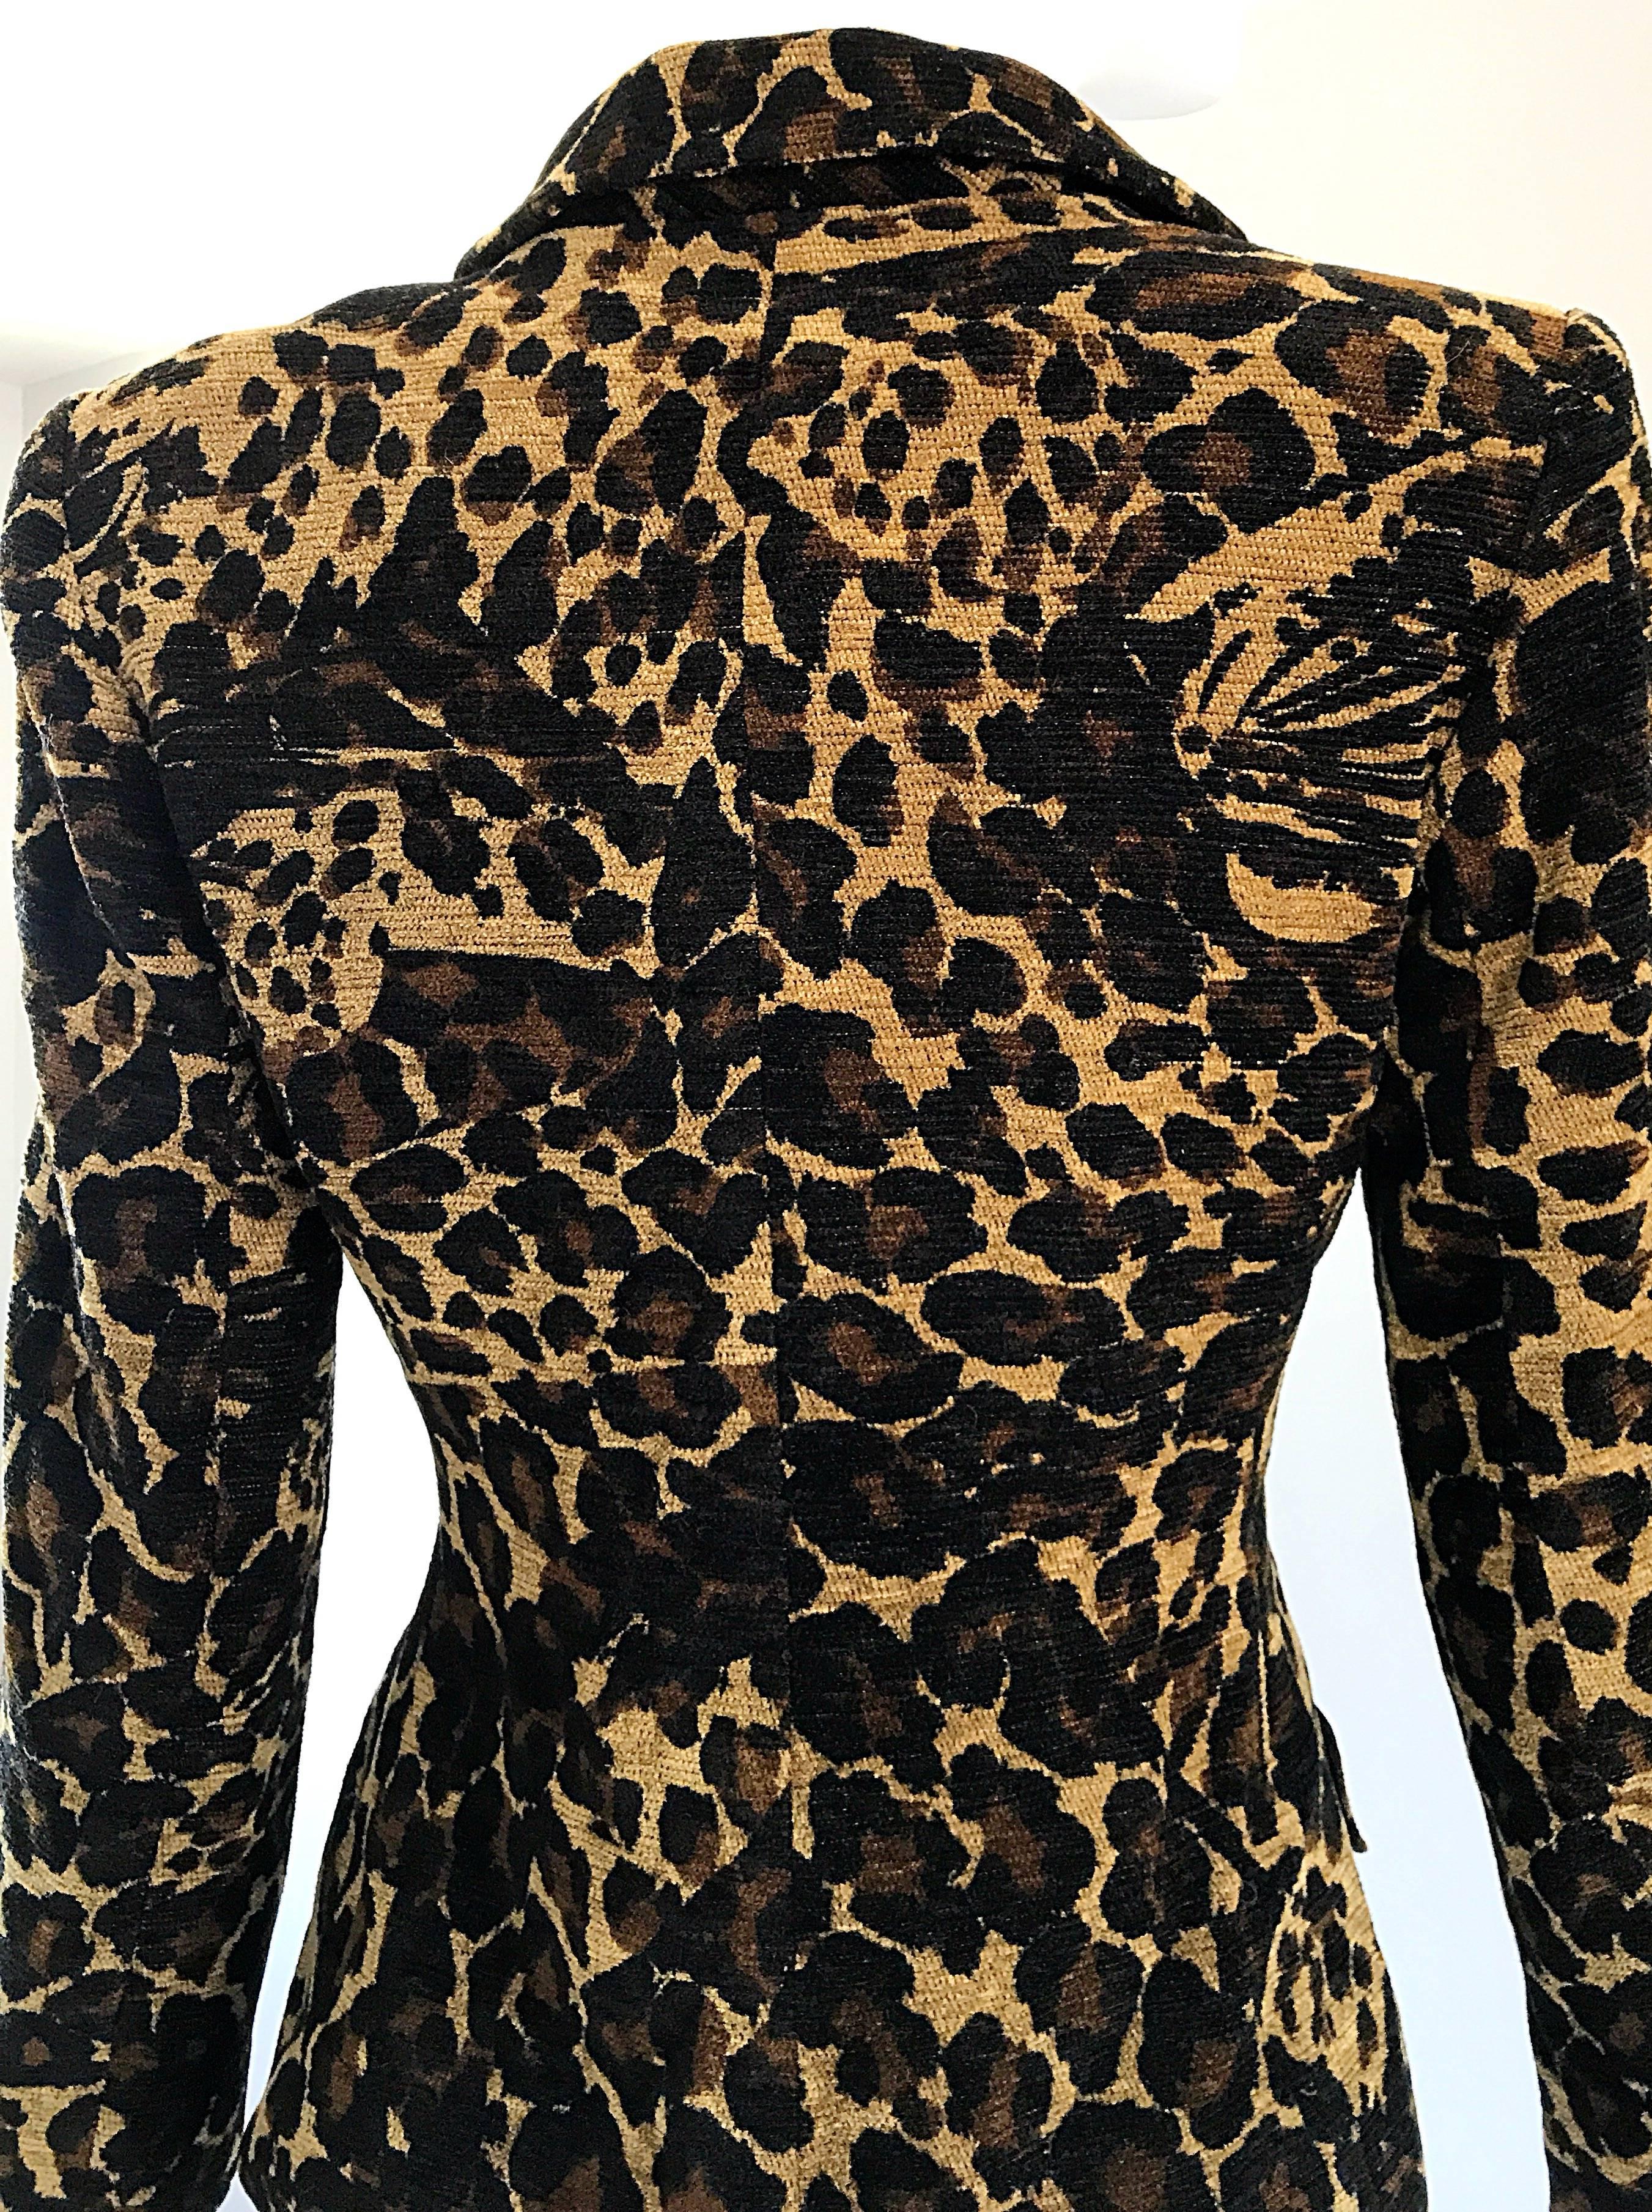 Iconic Yves Saint Laurent 1990s Leopard Print Chenille Vintage 90s ...